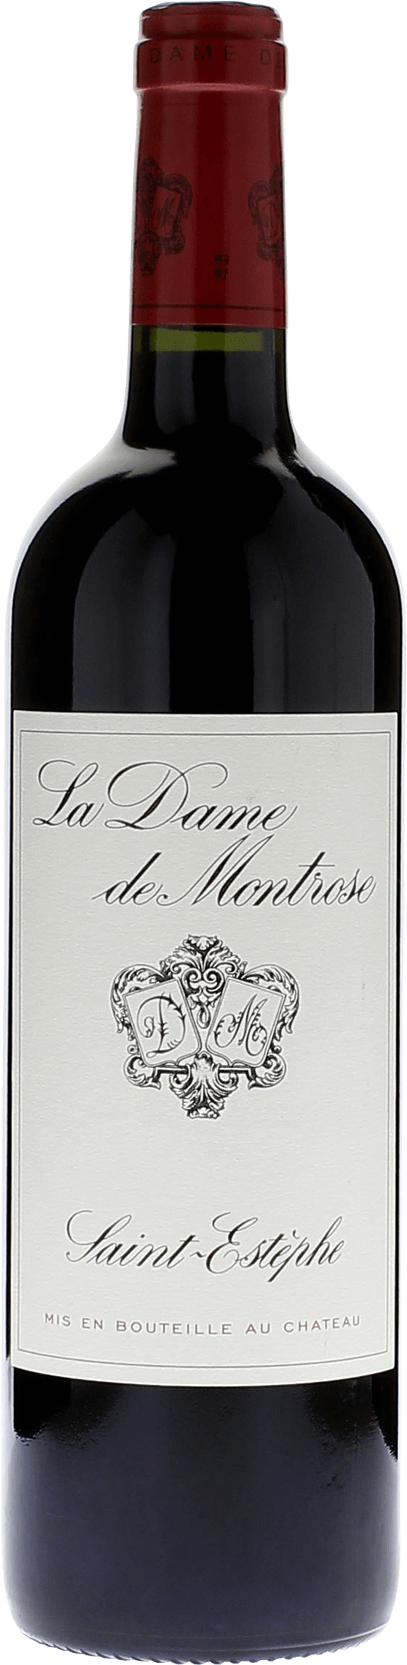 Dame de montrose 2016 5me Grand cru class Saint-Estphe, Bordeaux rouge